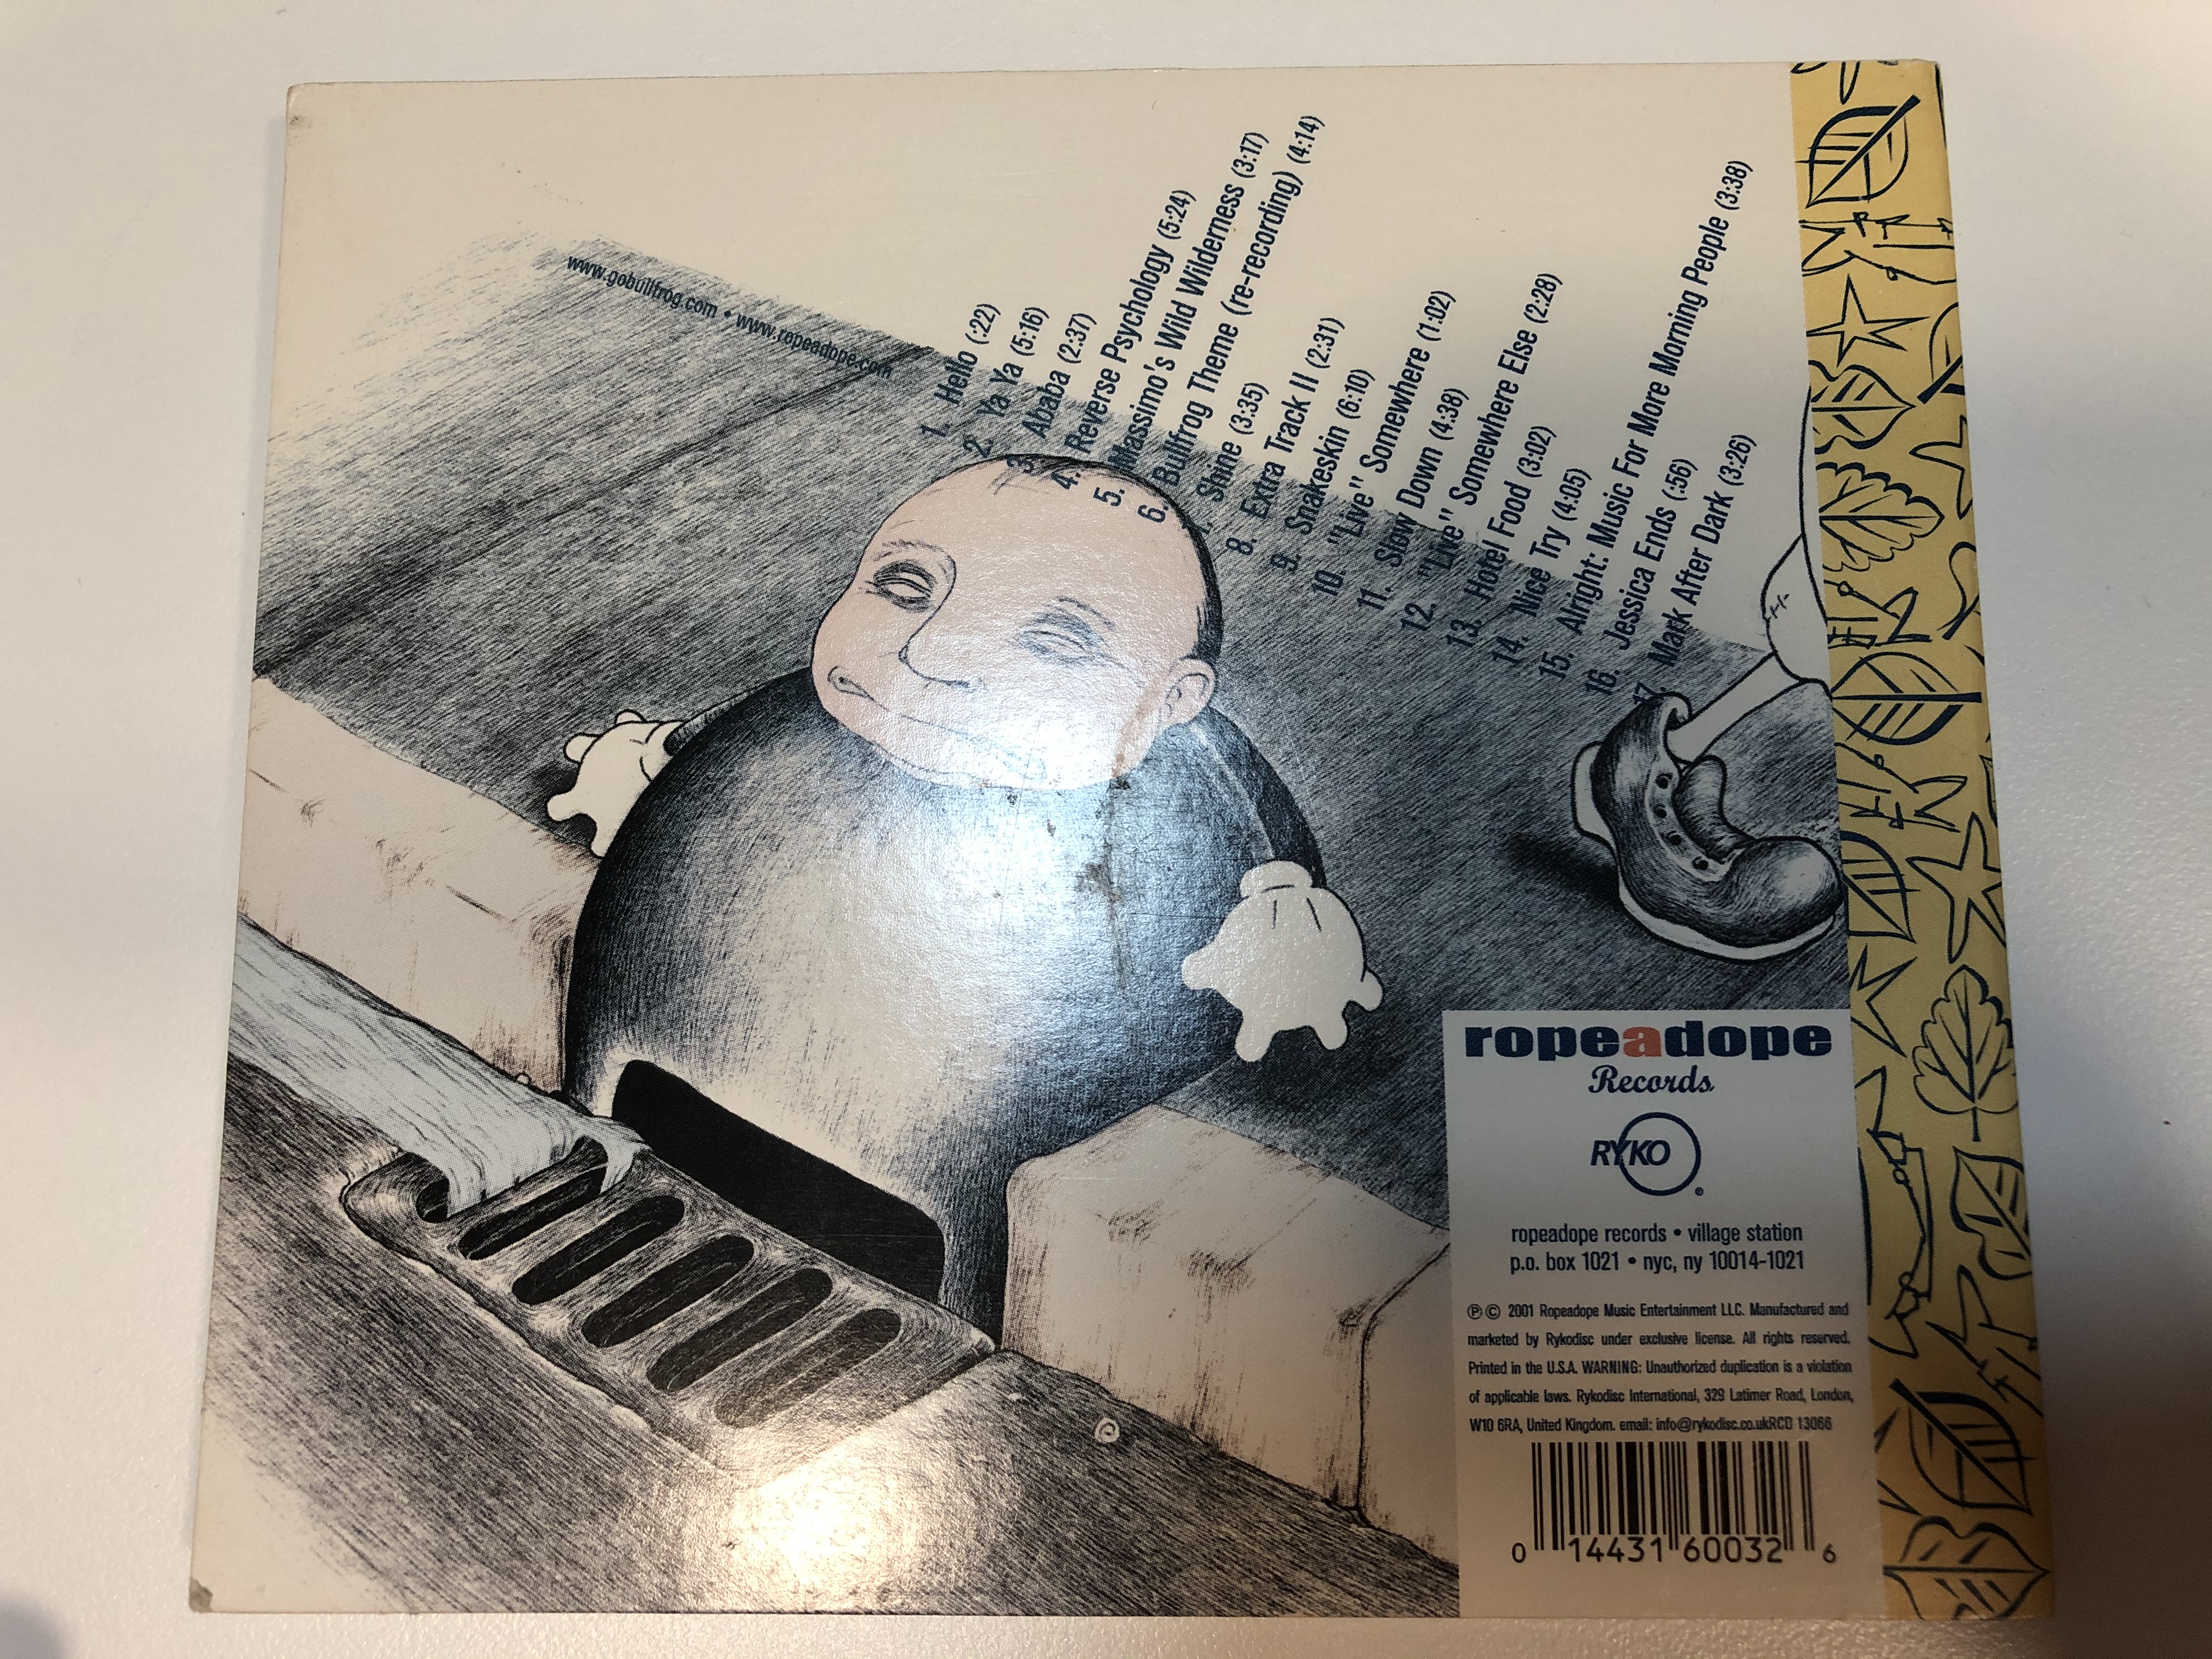 a-little-ropeadope-disc-bullfrog-ropeadope-records-audio-cd-2001-rcd-16003-3-.jpg